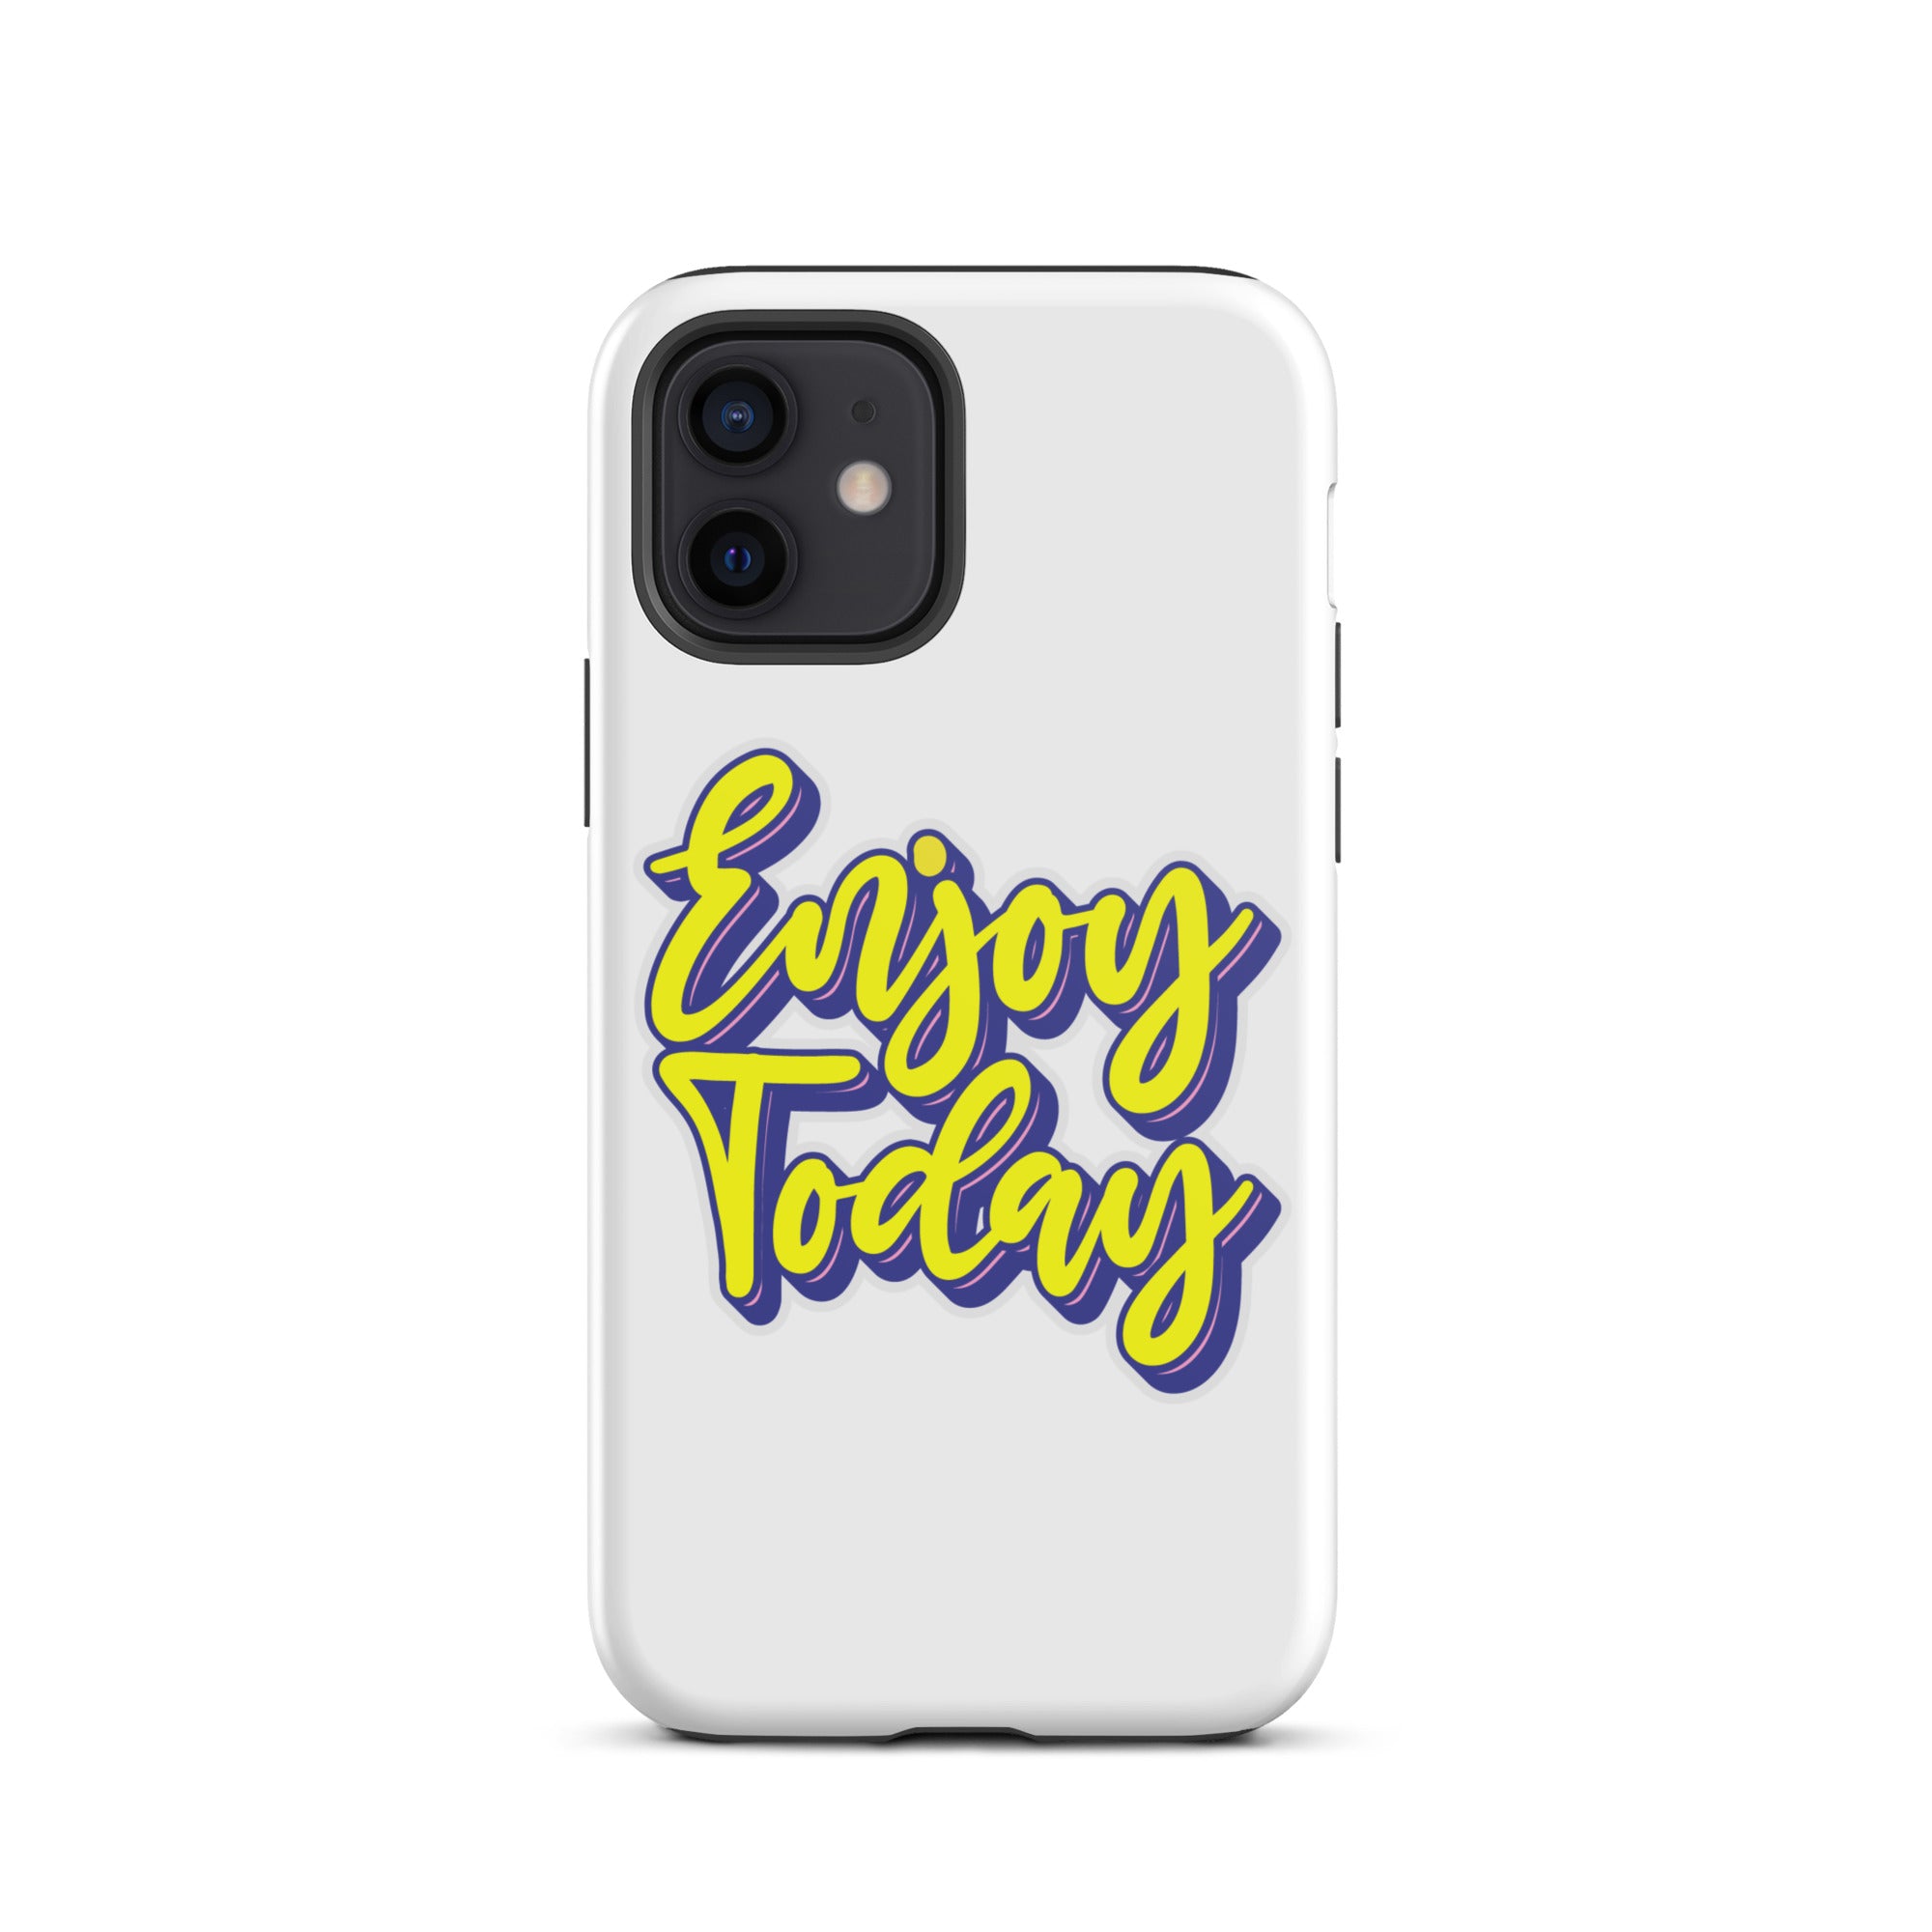 Enjoy Today - Tough iPhone case